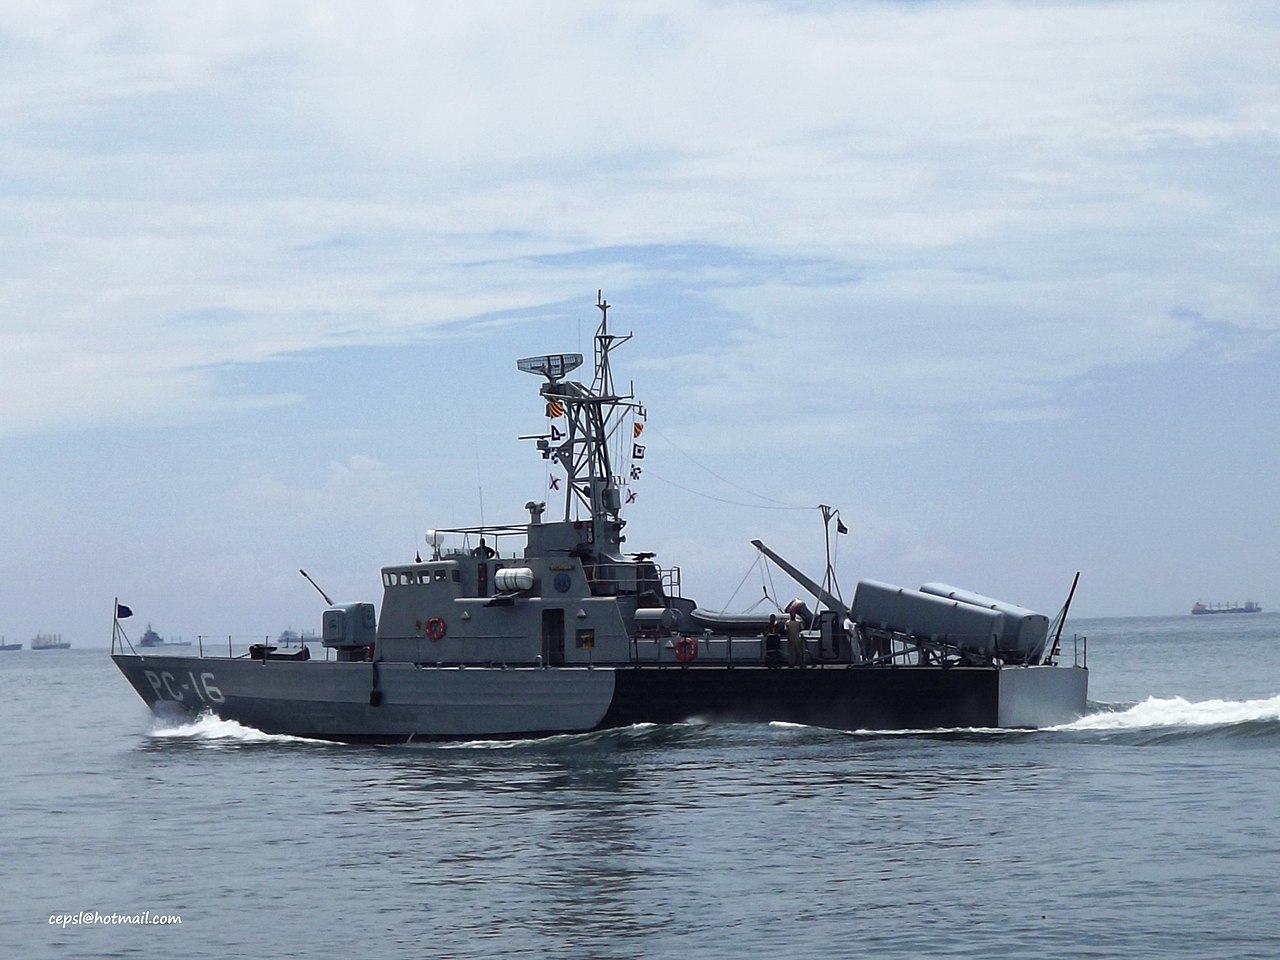 naval - Noticias de la Armada Bolivariana - Página 7 1280px-Patrullero_PC-16_Victoria_Vosper_37m.Clase_Federaci%C3%B3n